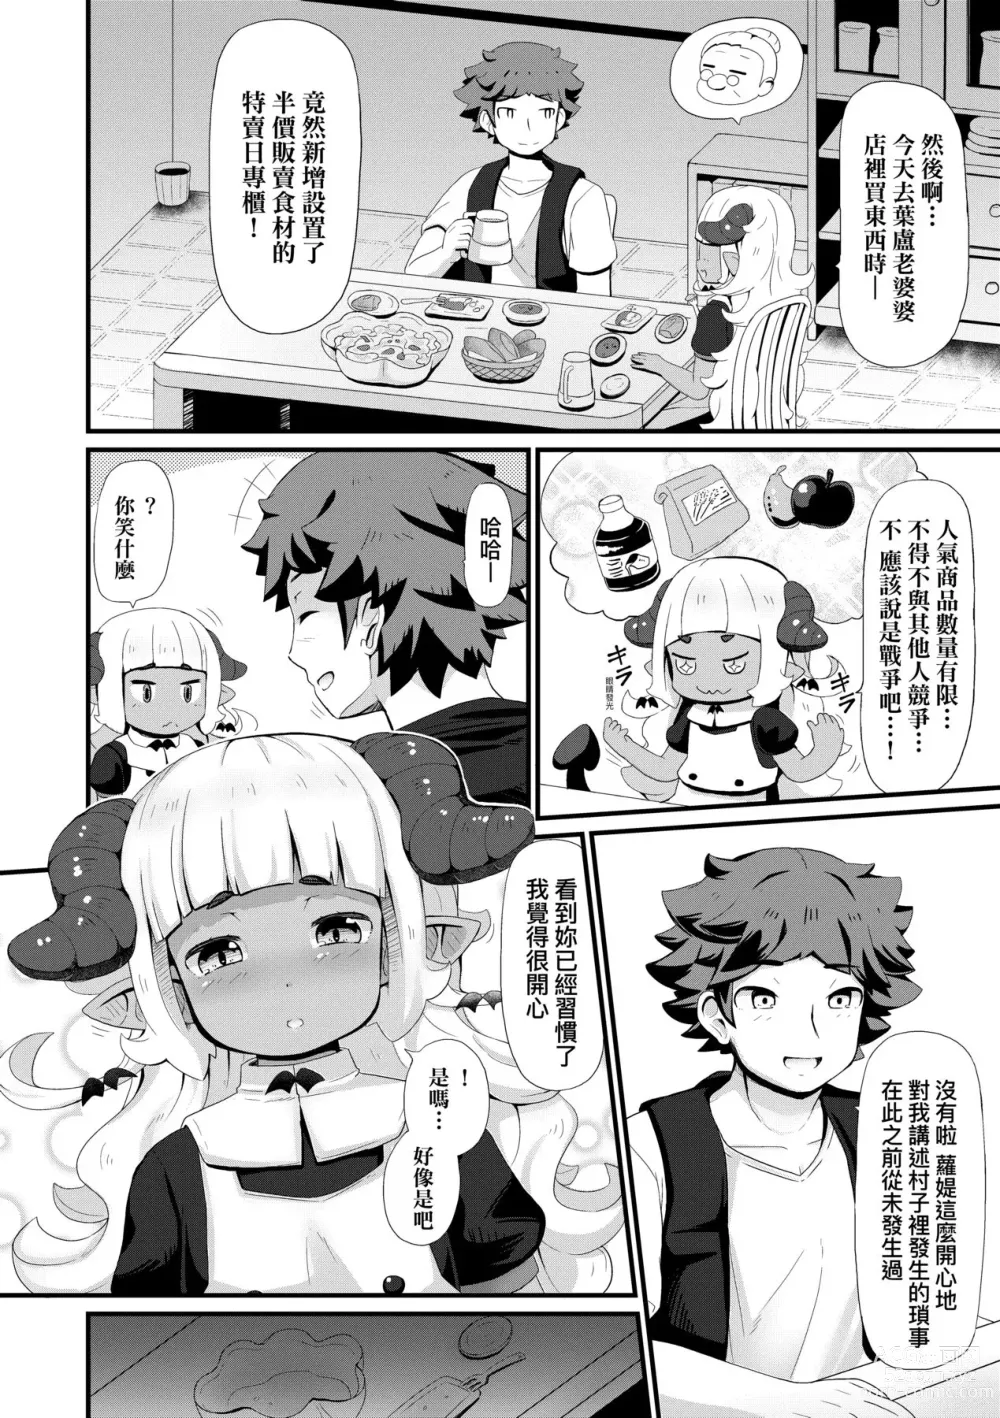 Page 159 of manga Kashi Oni Kochira (decensored)